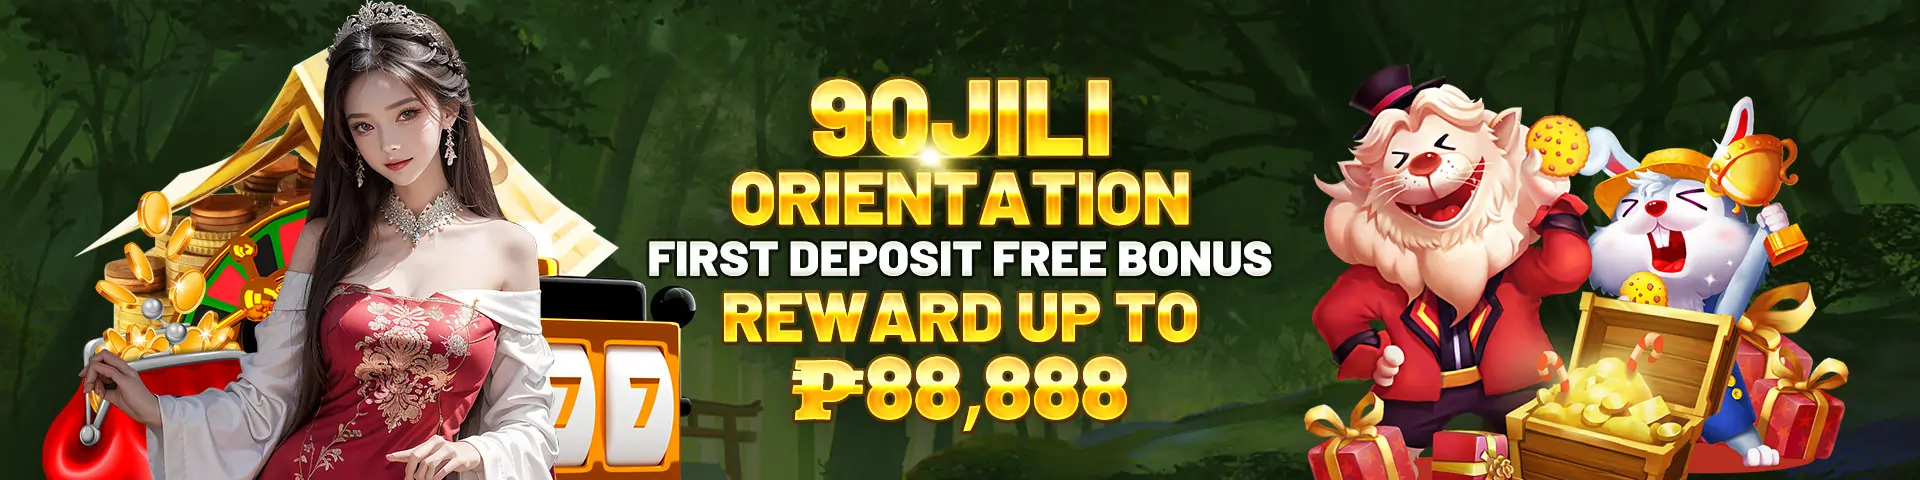 jili90 free 777 bonus